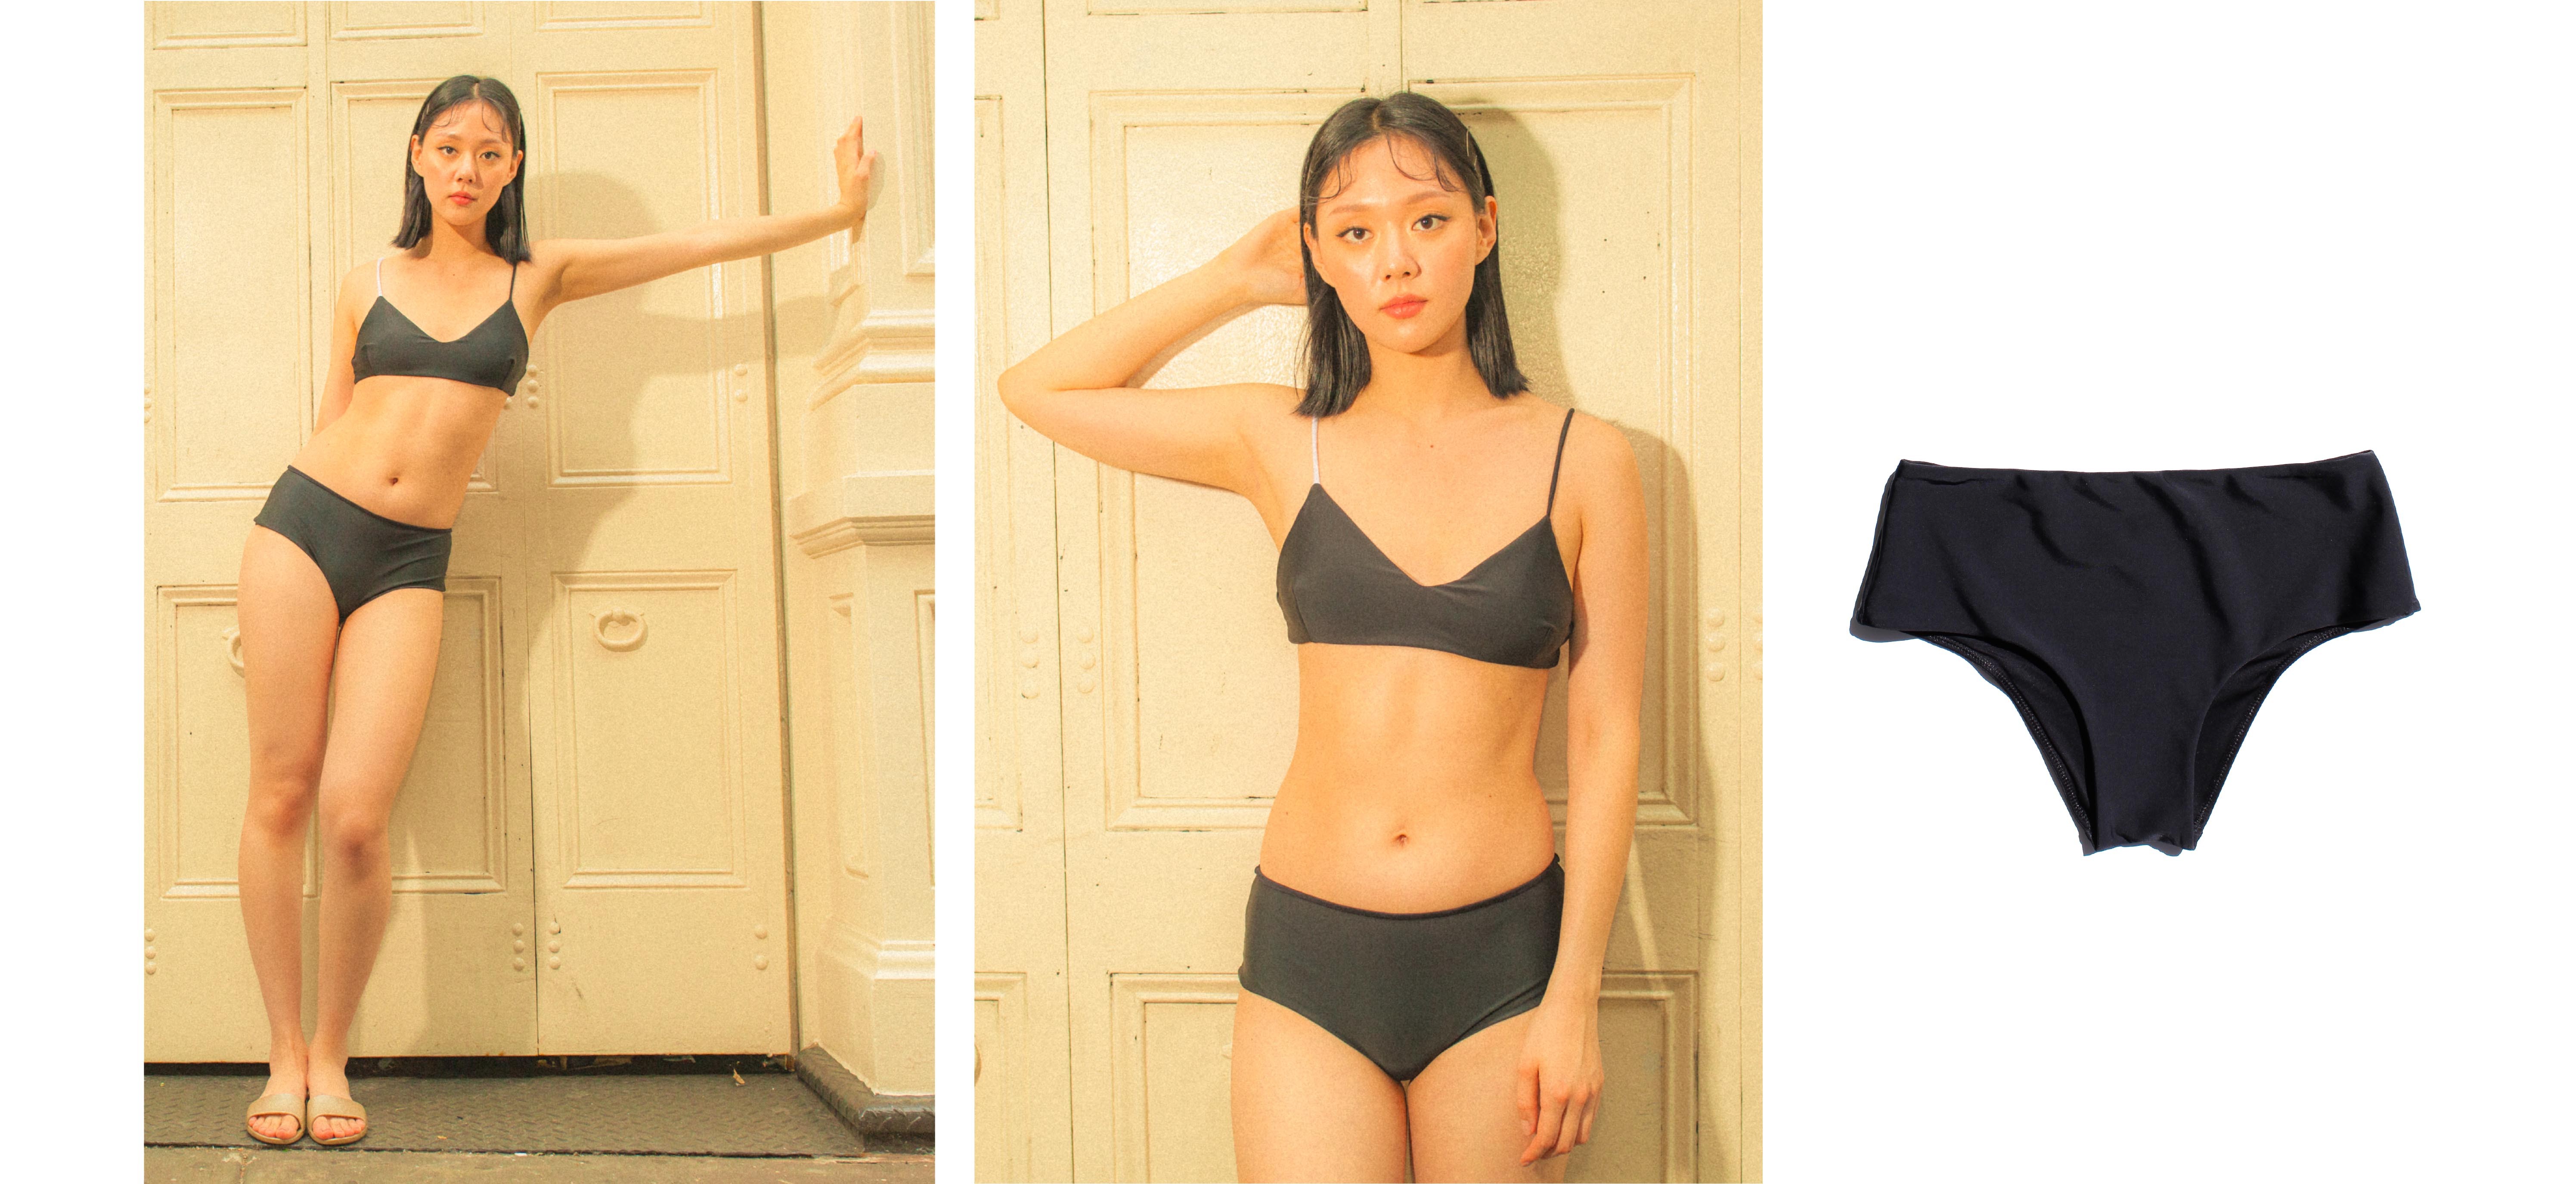 ESPRIT - Tri-colour mid-rise bikini bottoms at our online shop